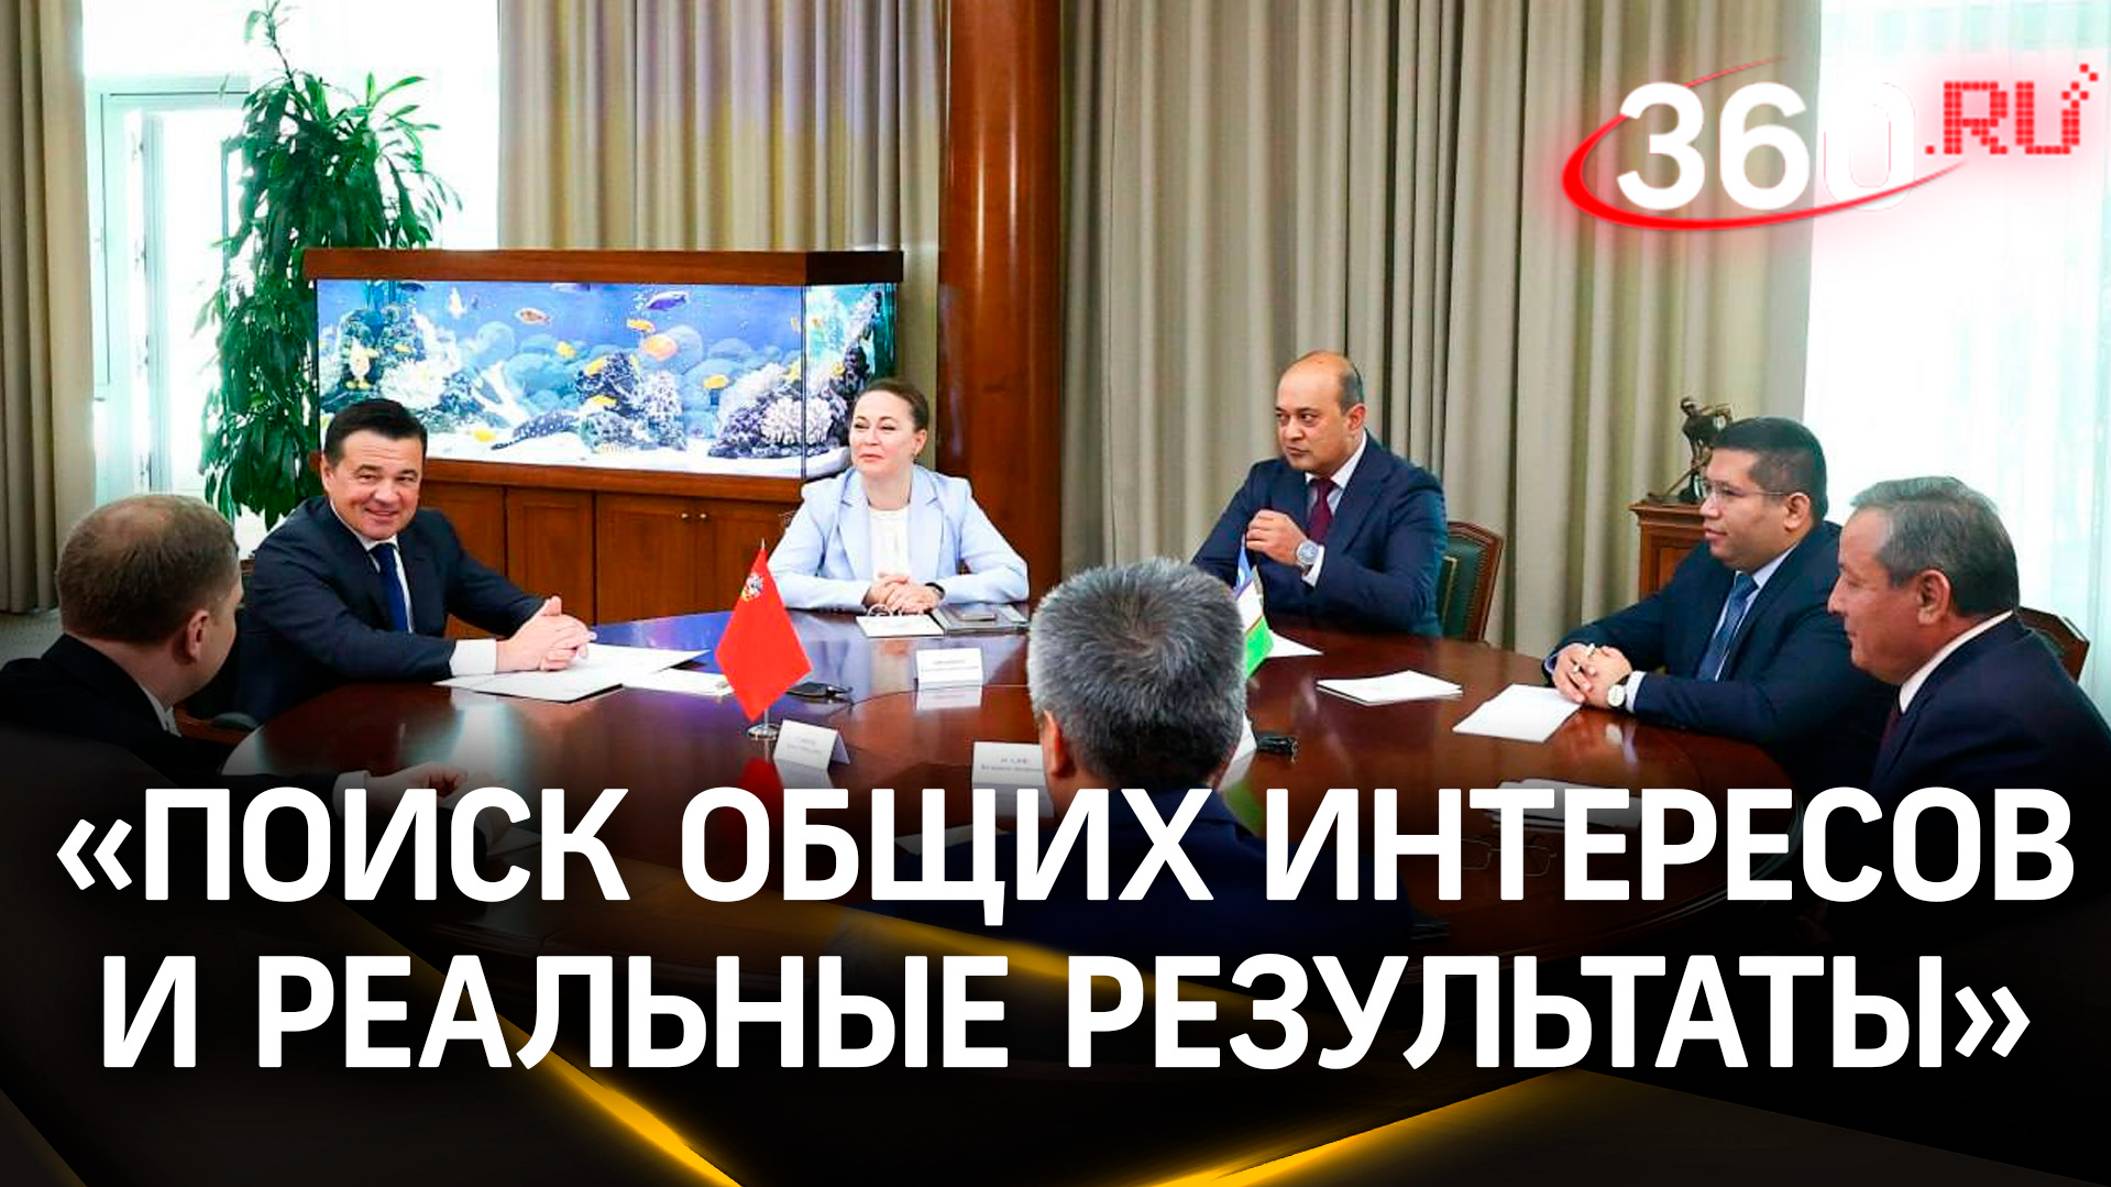 Подмосковье подписало договор сотрудничества с Андижанской областью Узбекистана: что туда входит